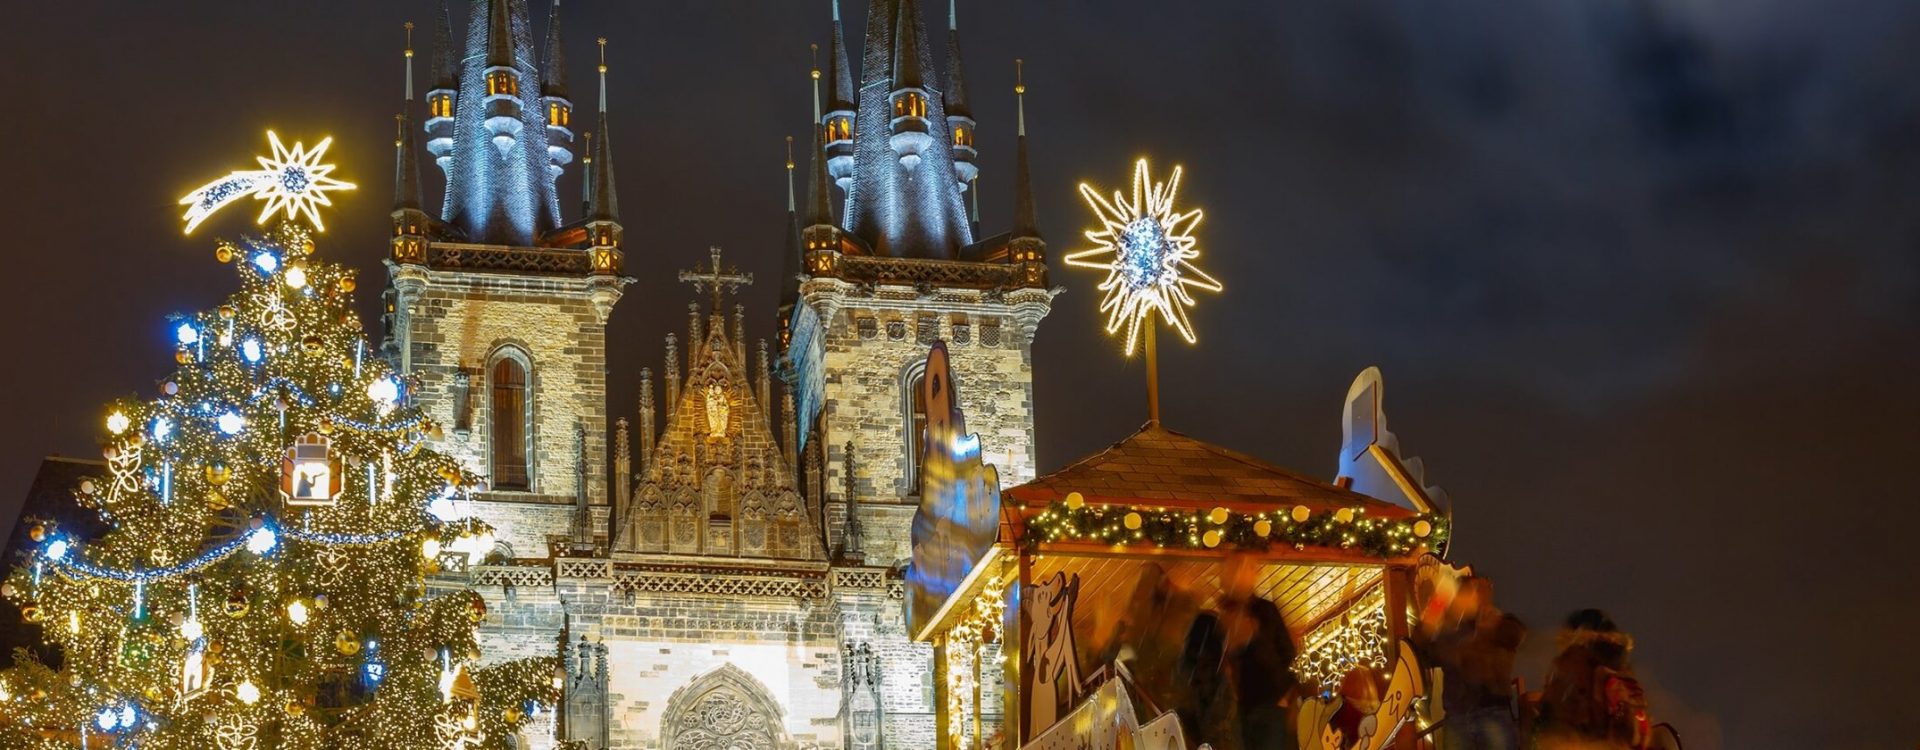 magicalchristmasmarkets_CZECHREPUBLIC_Prague_ss_446259364_hero